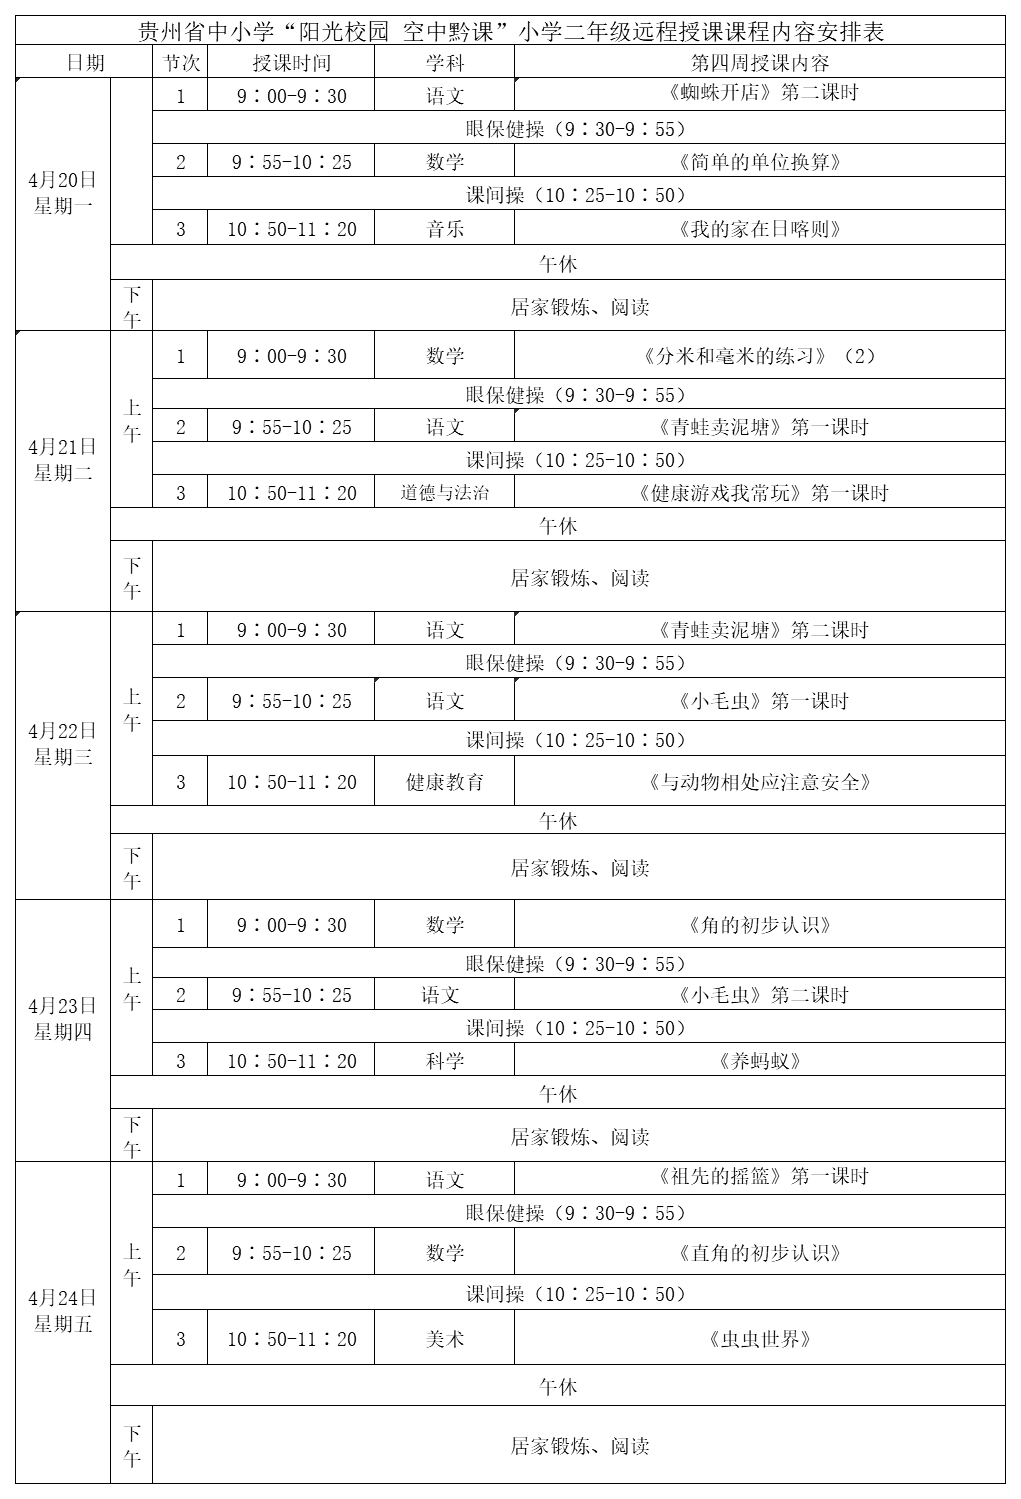 贵州中小学“空中课堂”课程表完整版公布（4月20日10